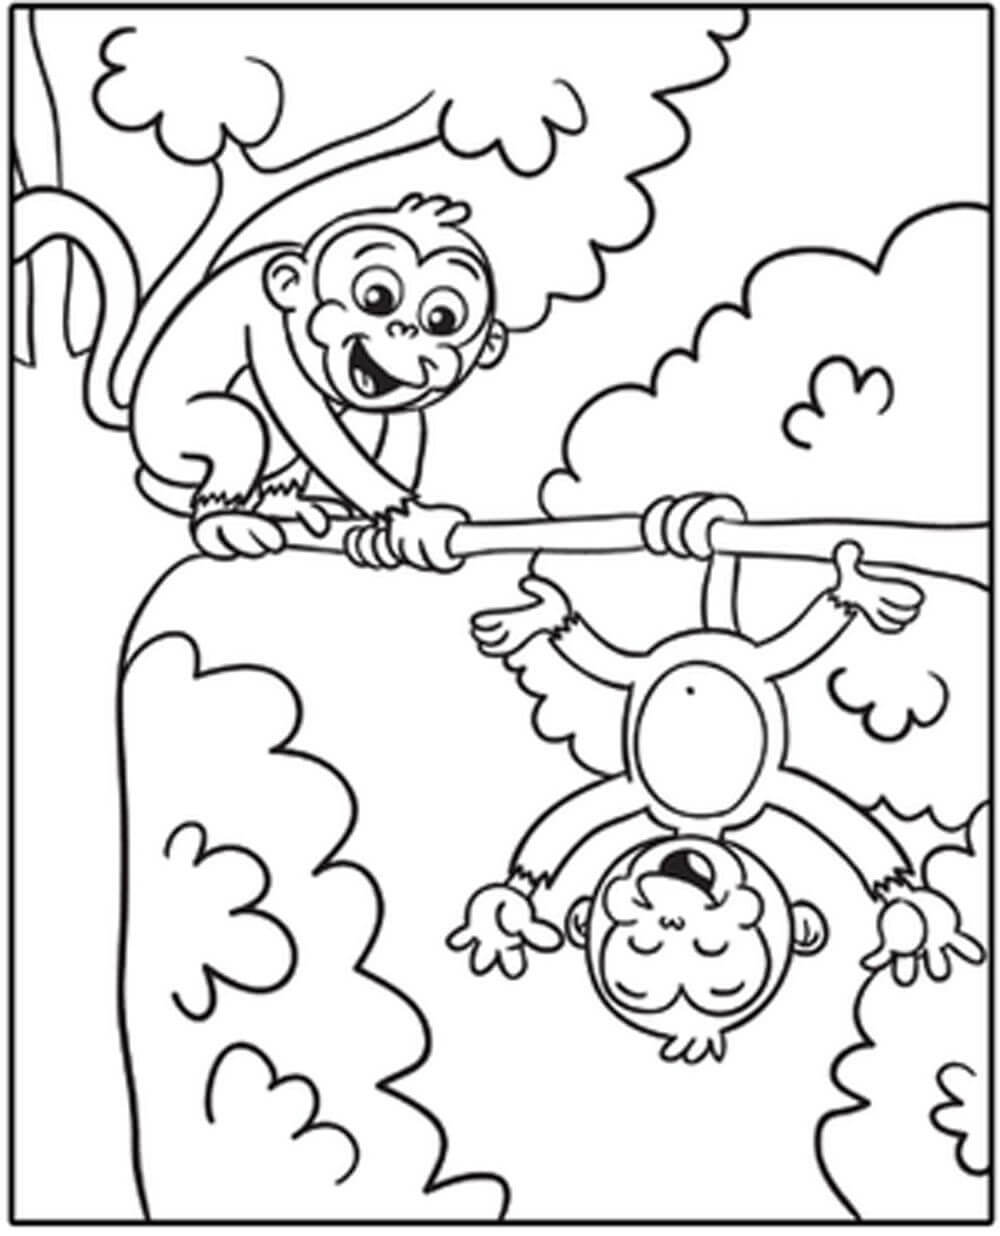 Dois Macacos Engraçados para colorir